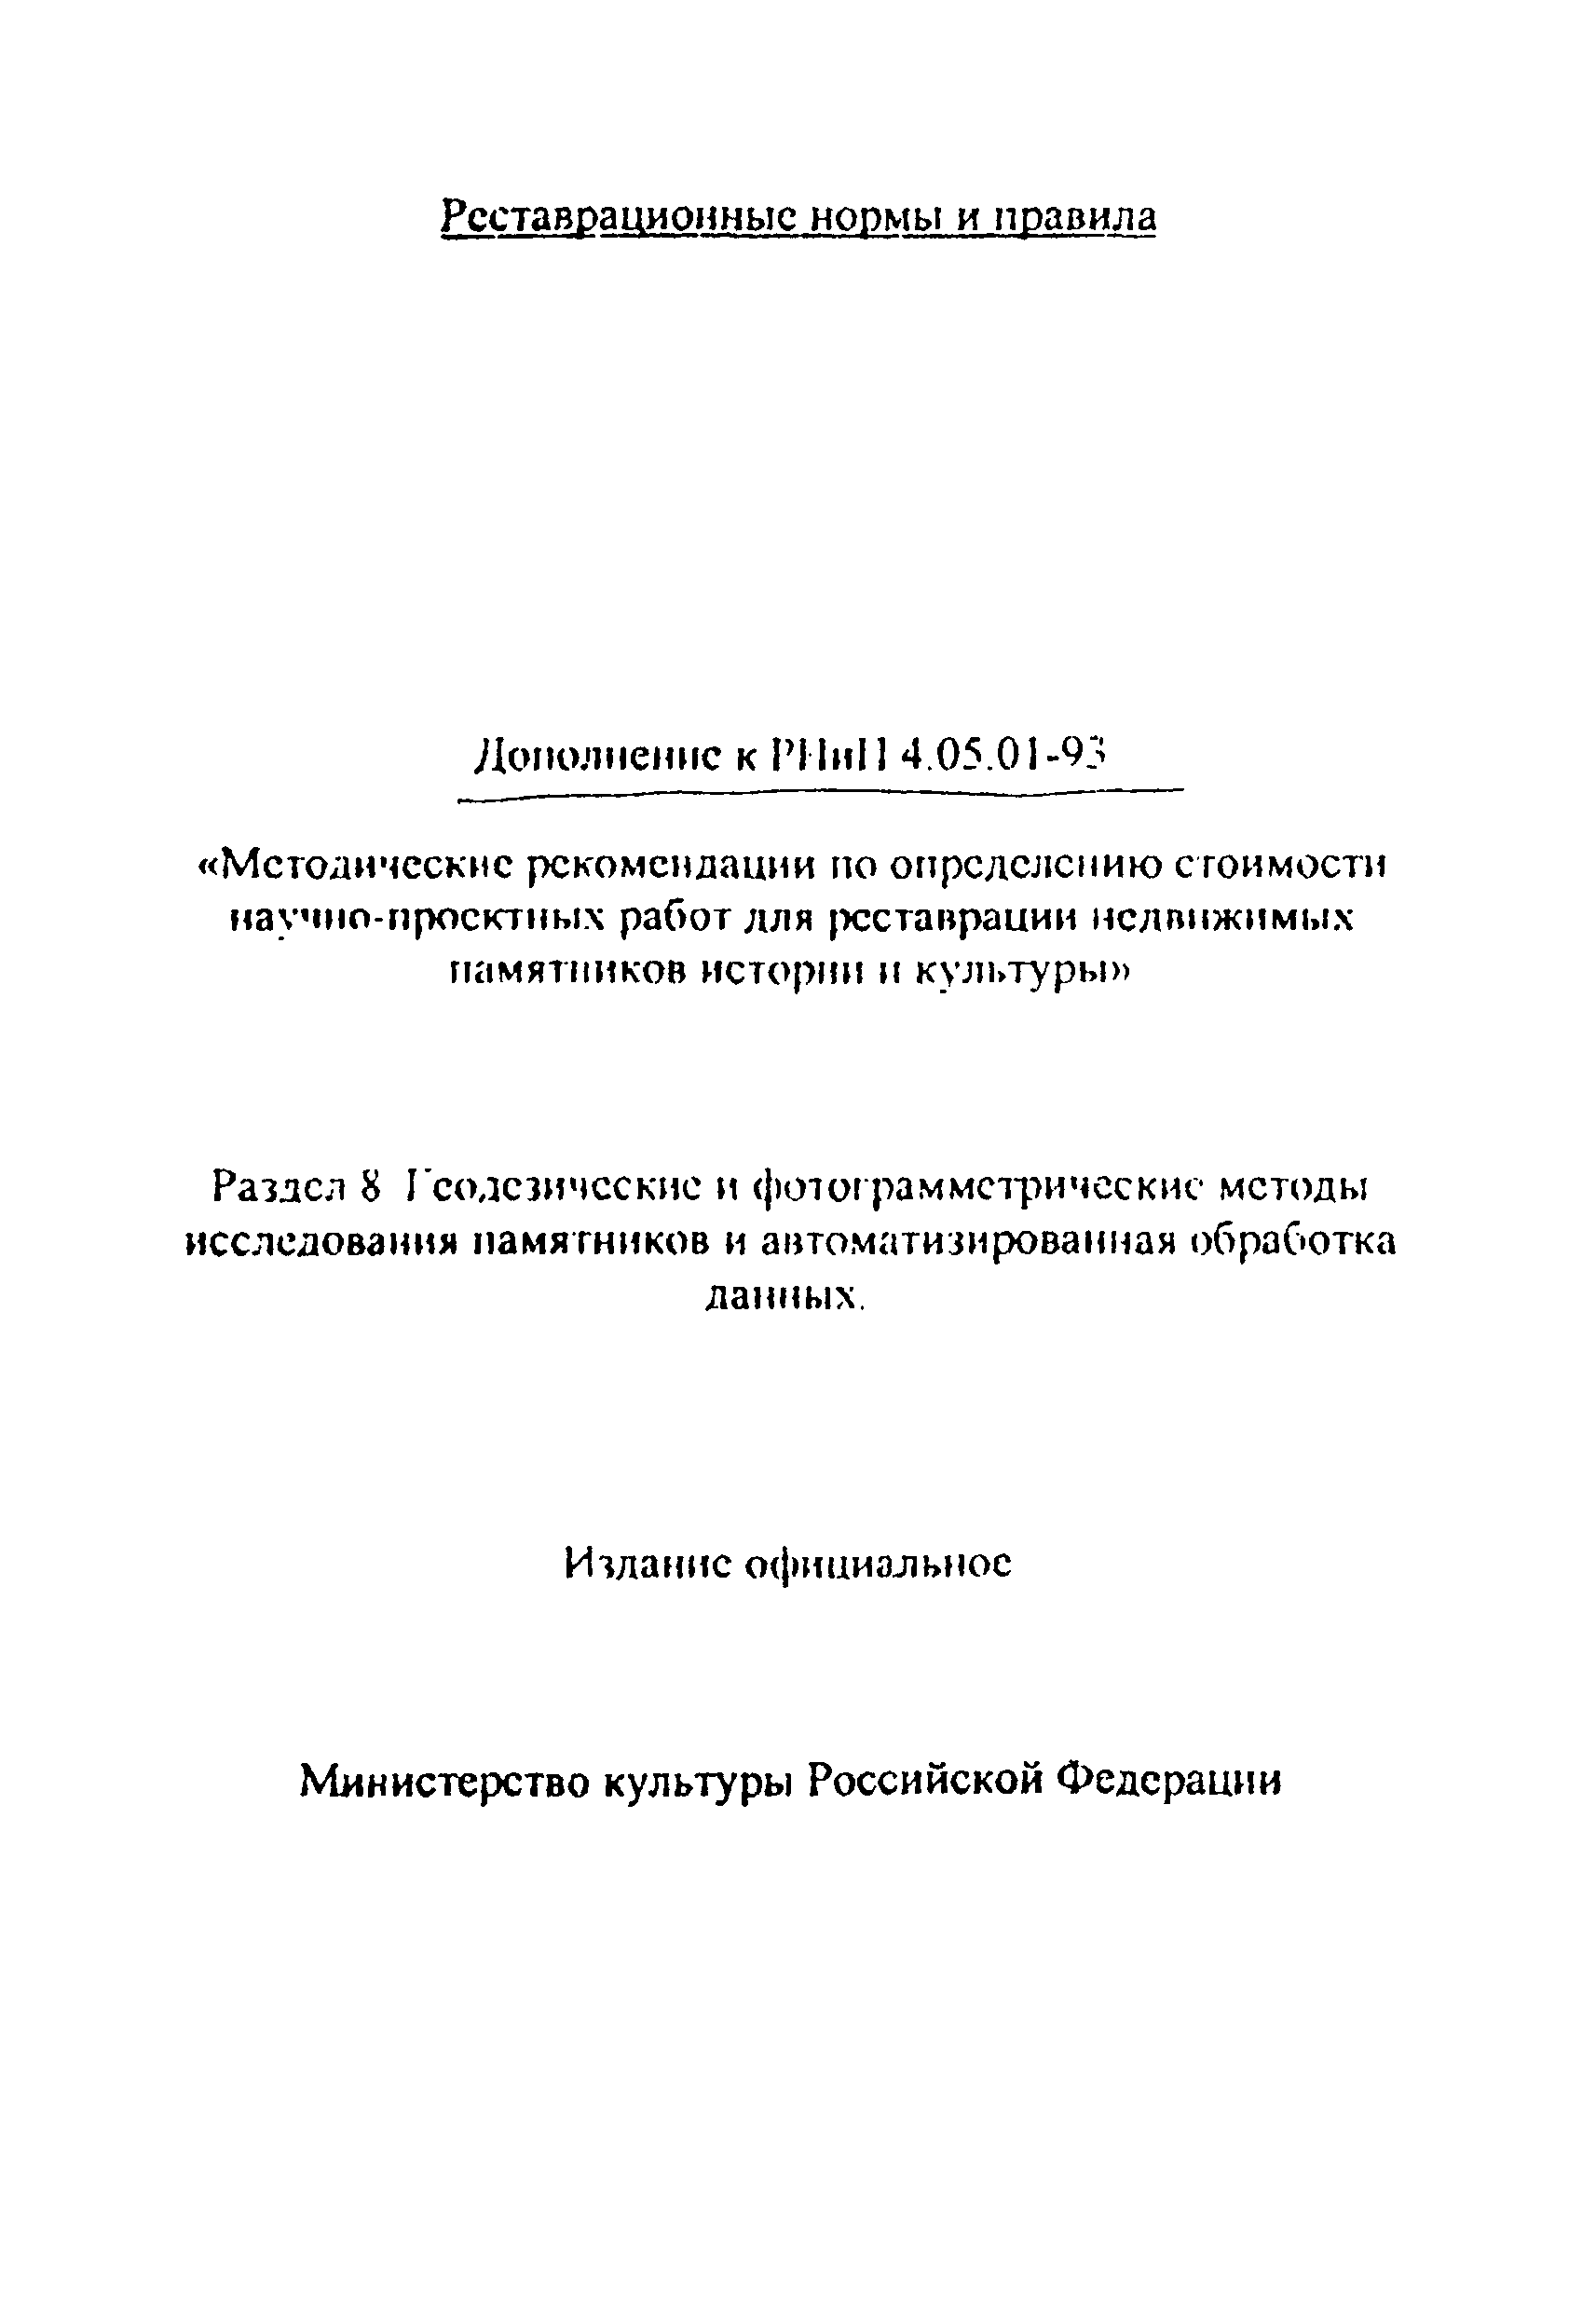 Дополнение к РНиП 4.05.01-93